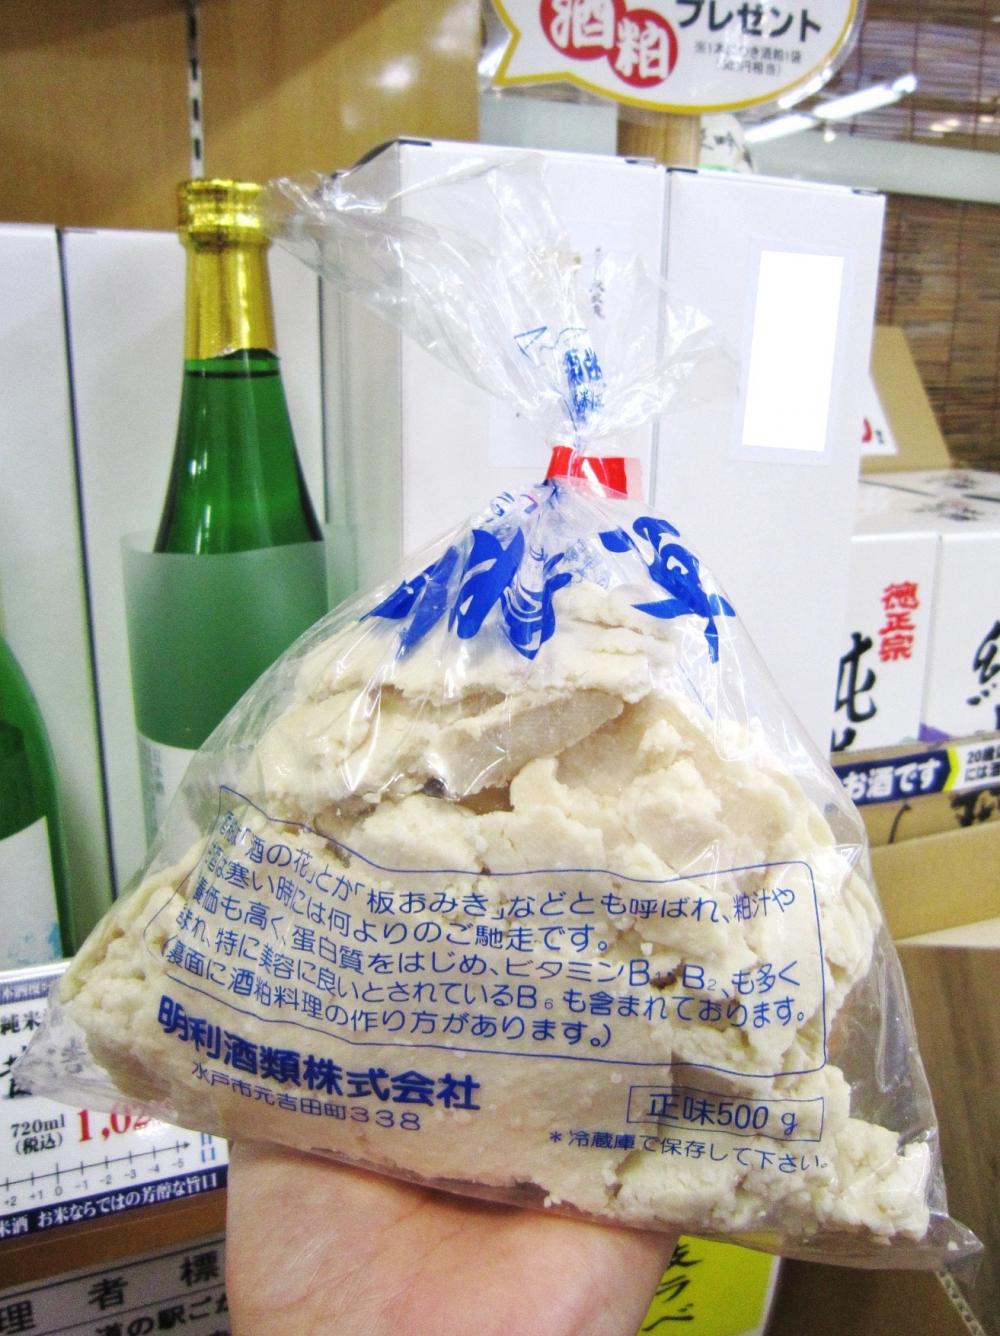 茨城純米吟醸「大丈夫」干支ラベル☆明利の酒粕プレゼントに関するページ